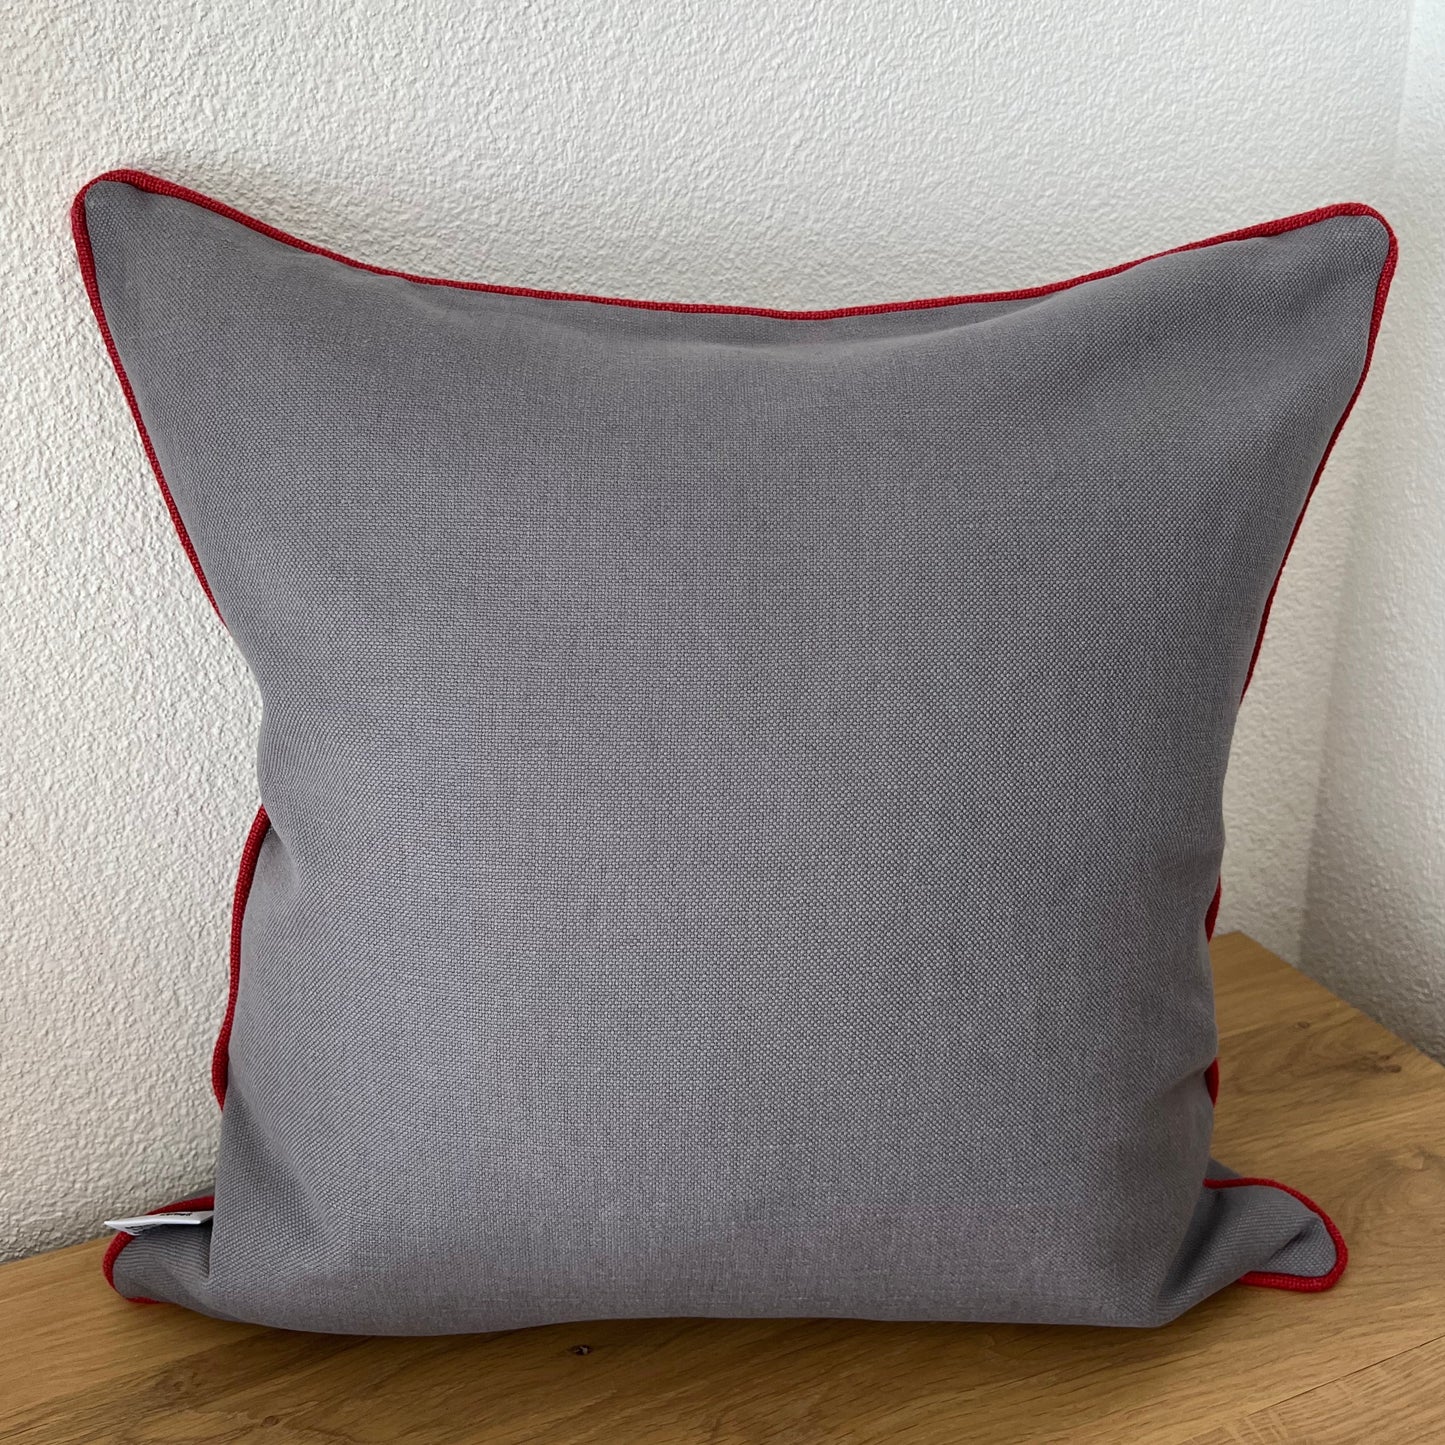 Matterhorn cushion cover, grey